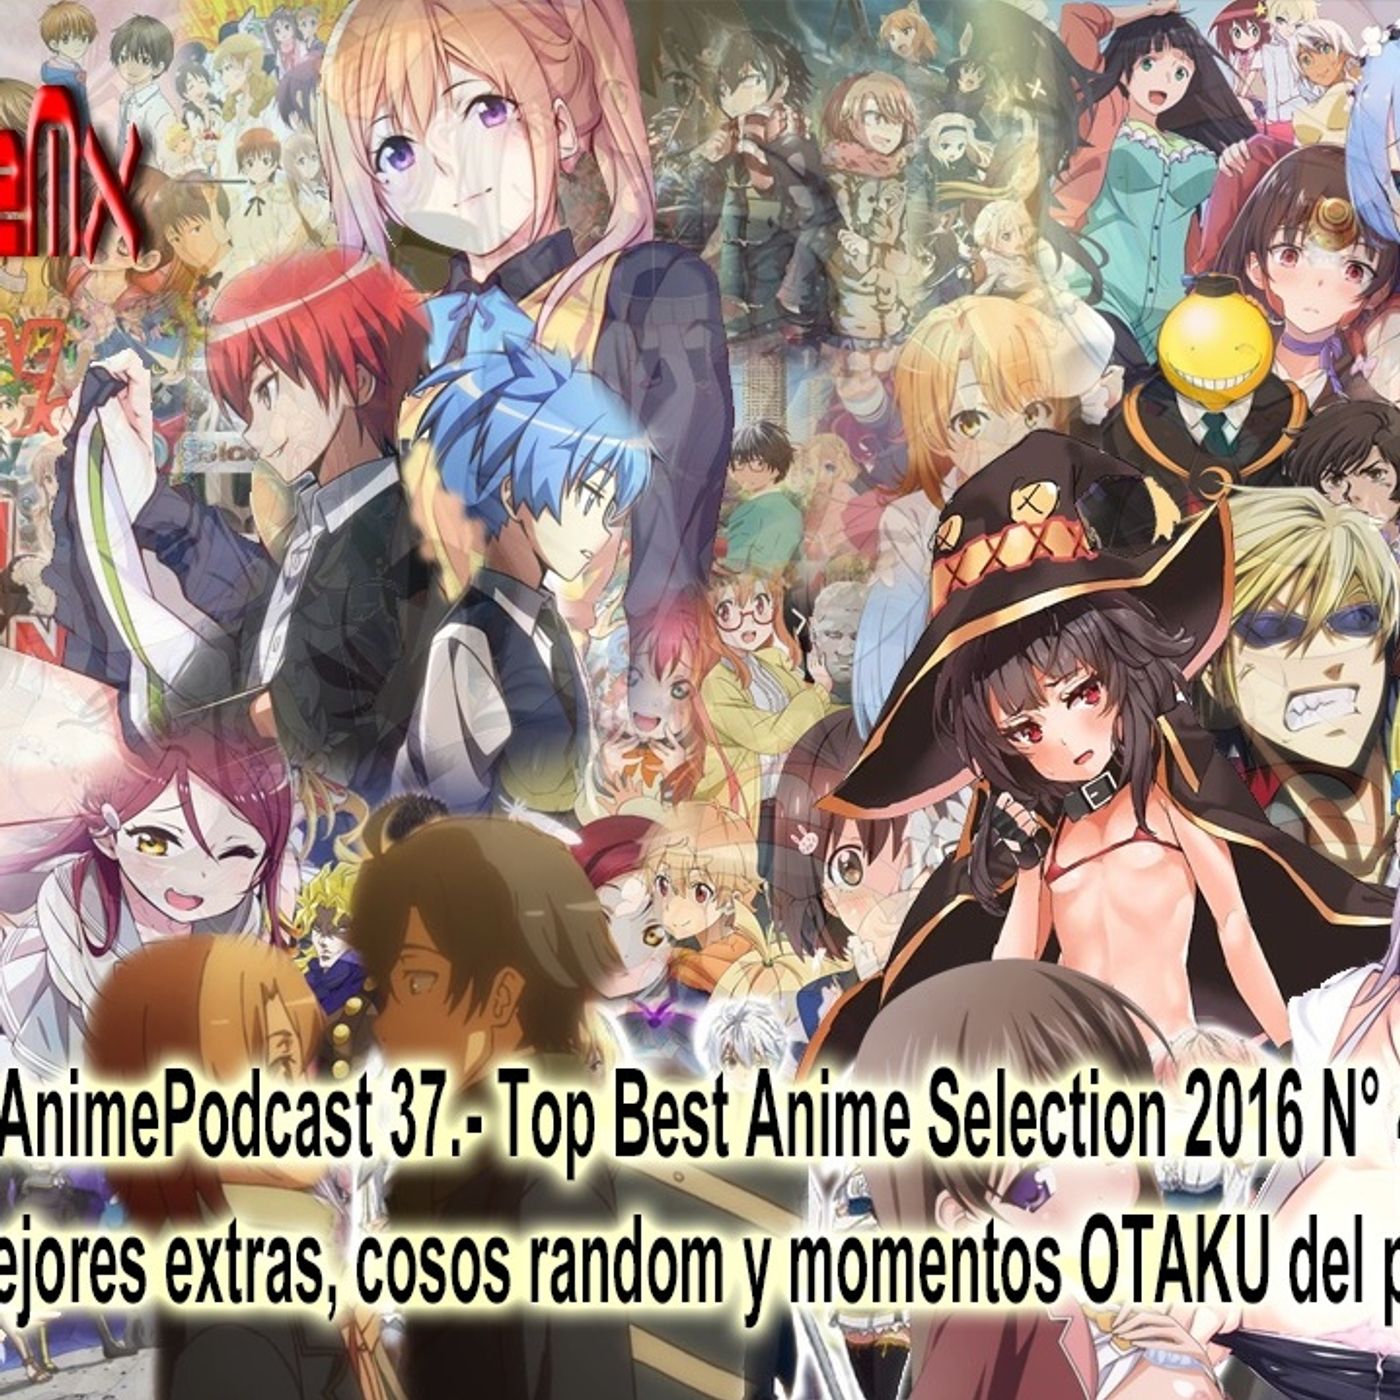 AnimePodcast 34.- Temporada de Otoño 2016 Primeras Impresiones Detectives, Bicicletas y LA CARACOLA MAGICA 2